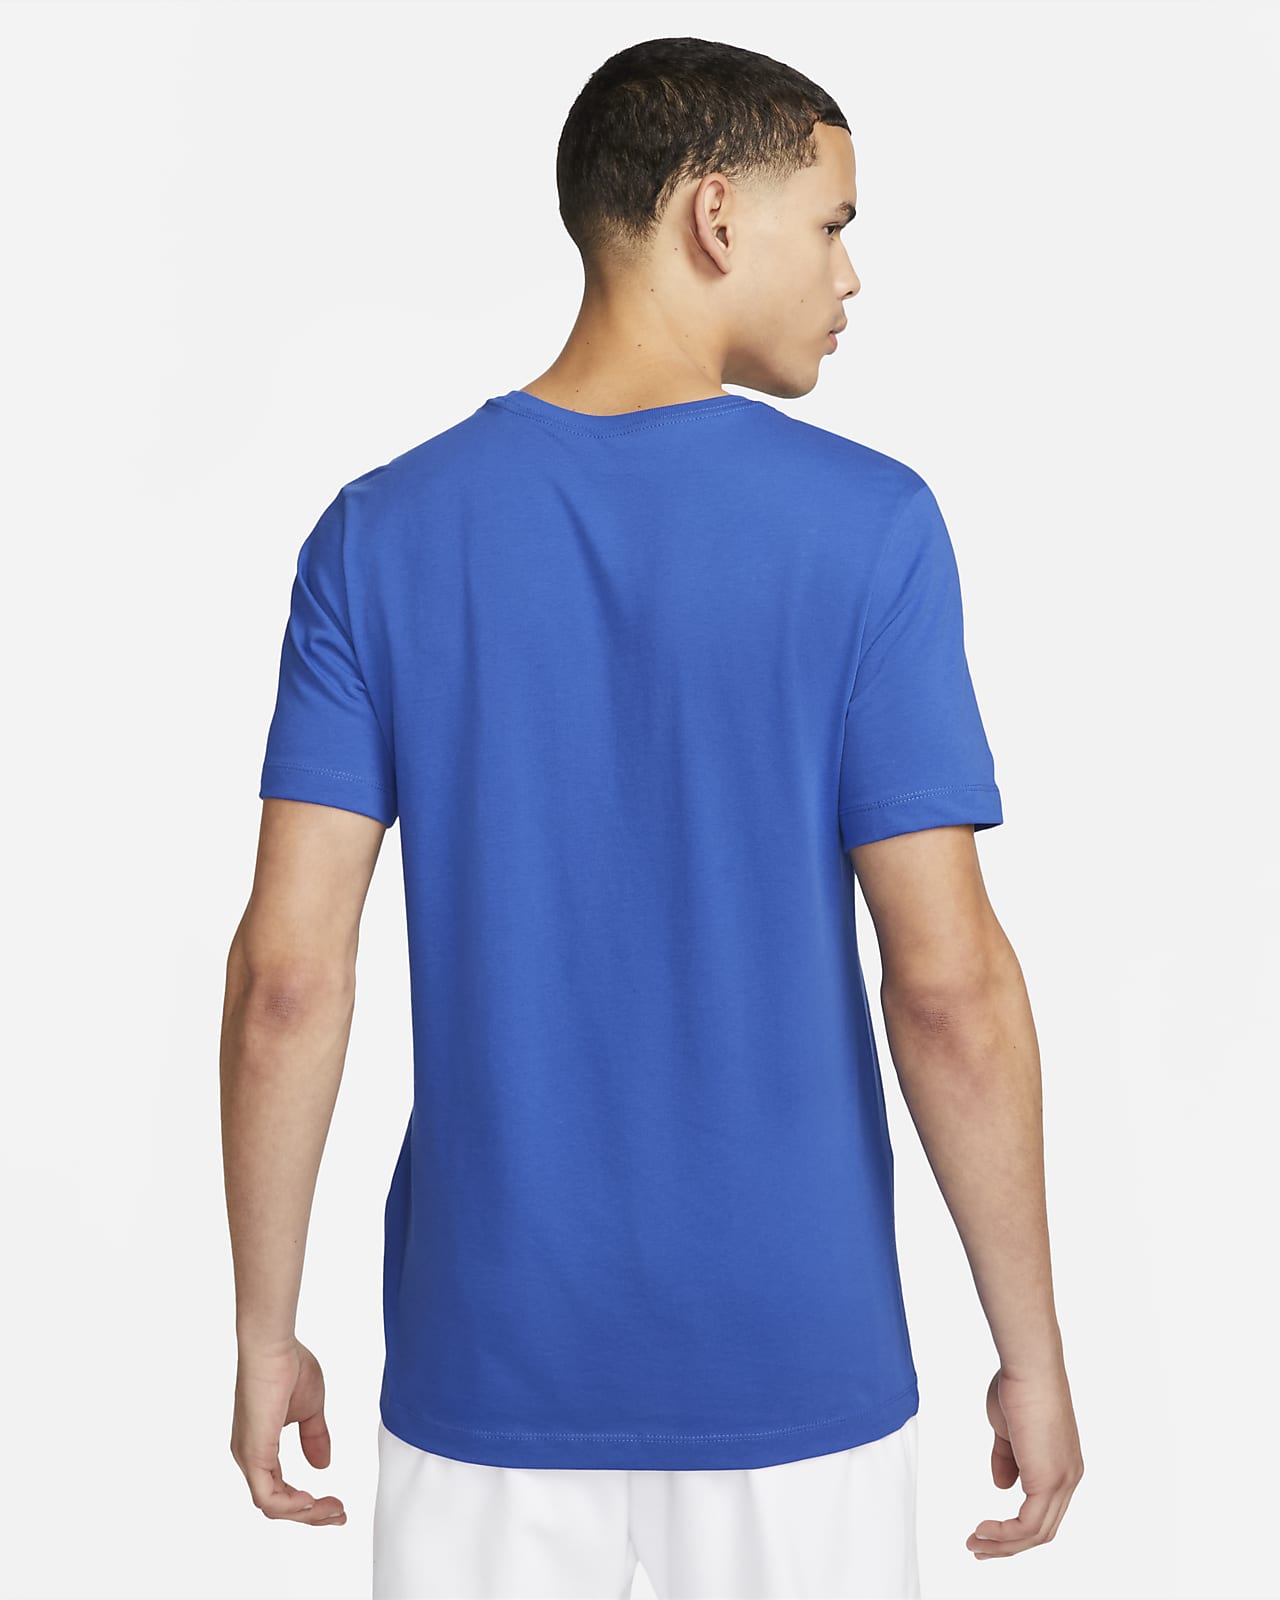 Camiseta de tenis - Hombre. Nike ES